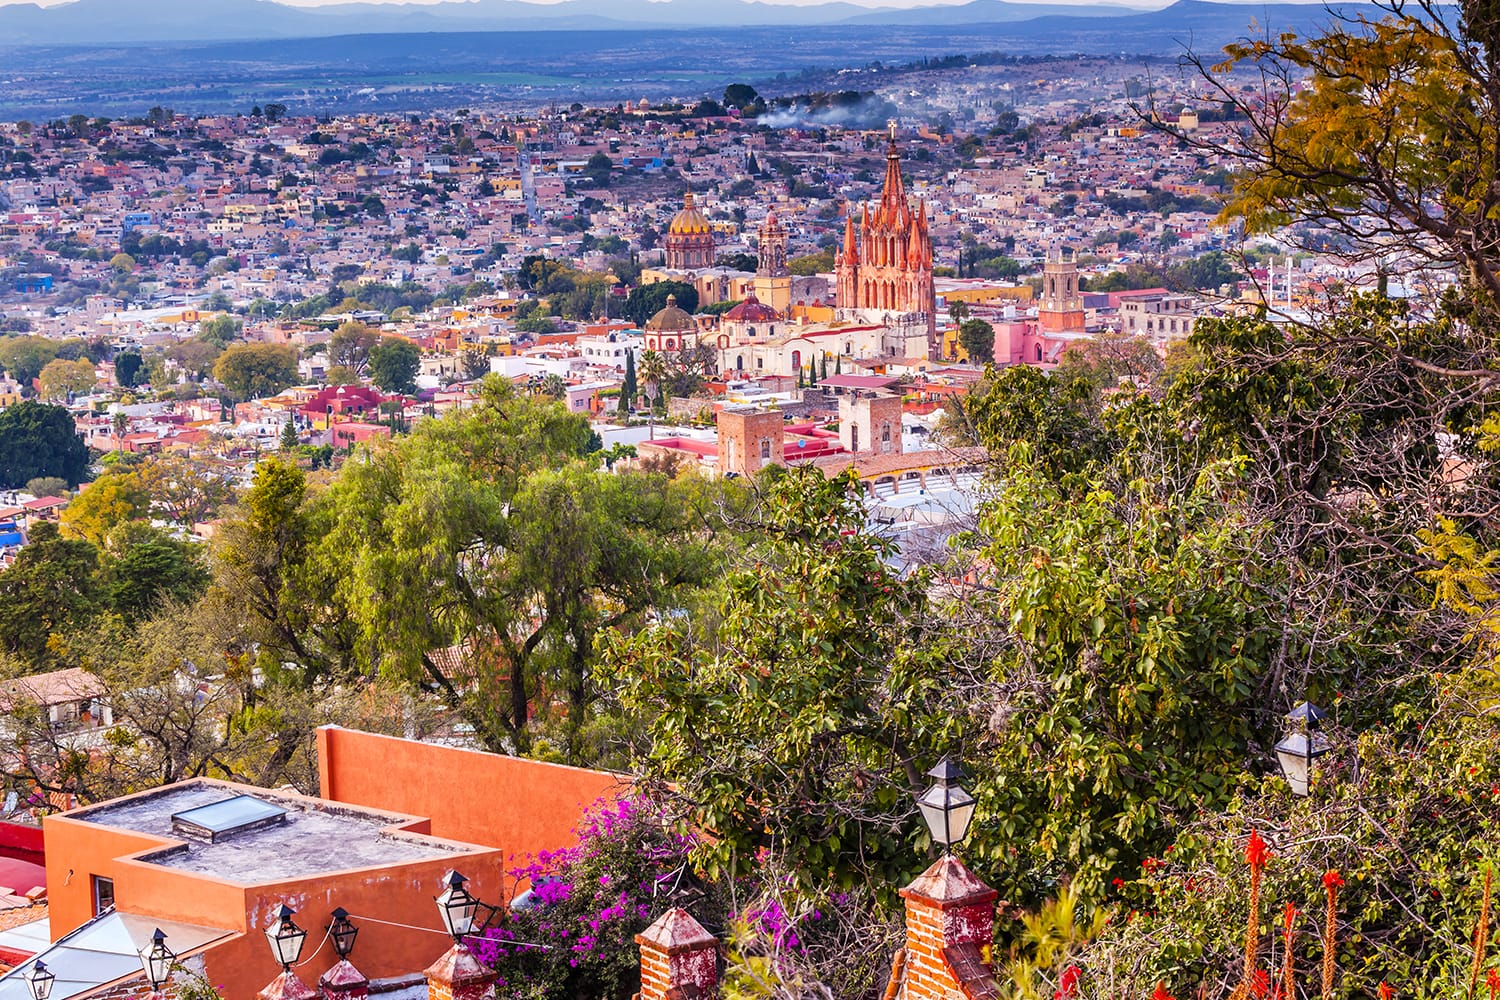 View from Miramar Overlook in San Miguel de Allende, Mexico